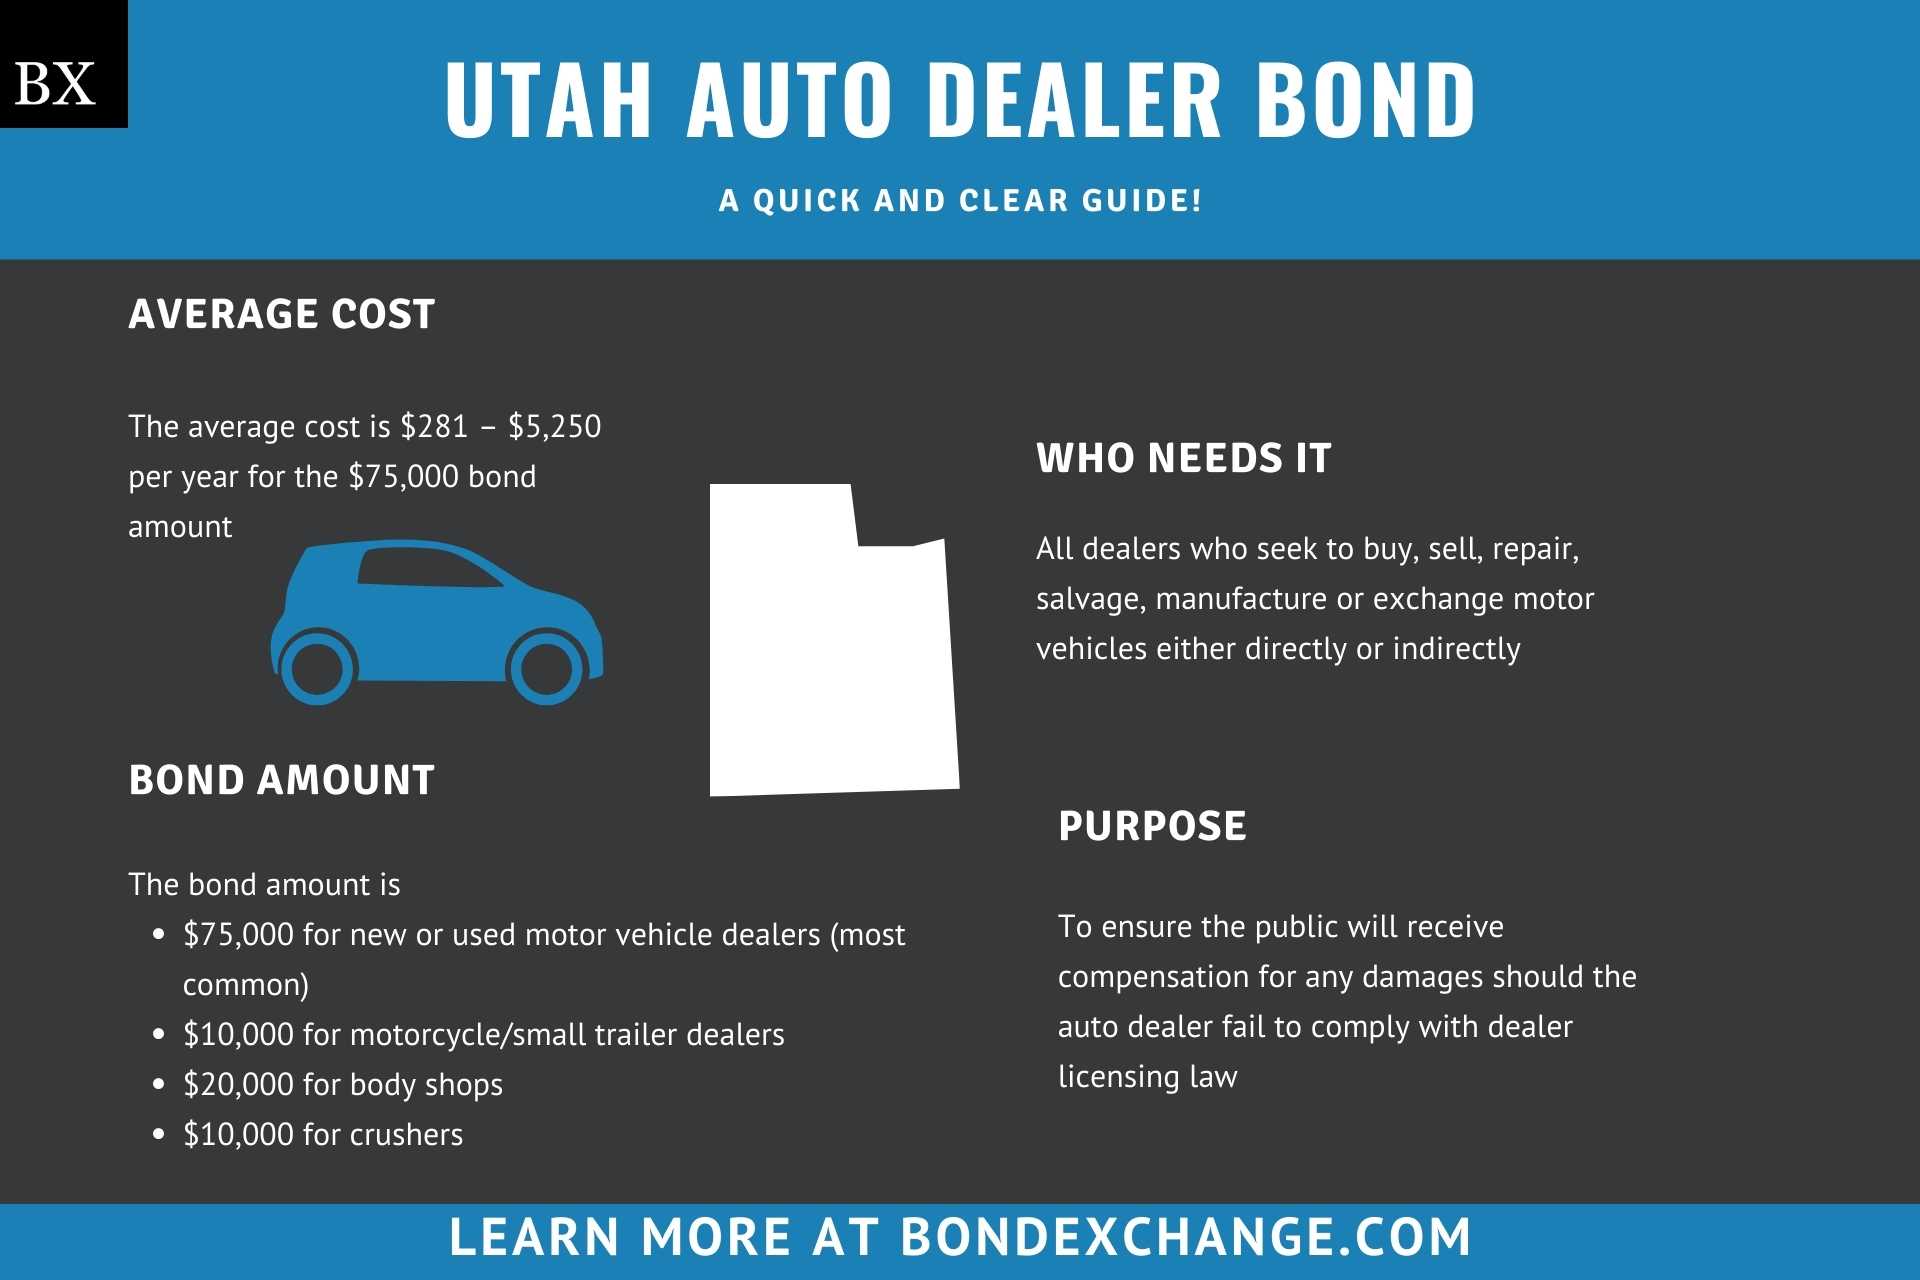 Utah Auto Dealer Bond